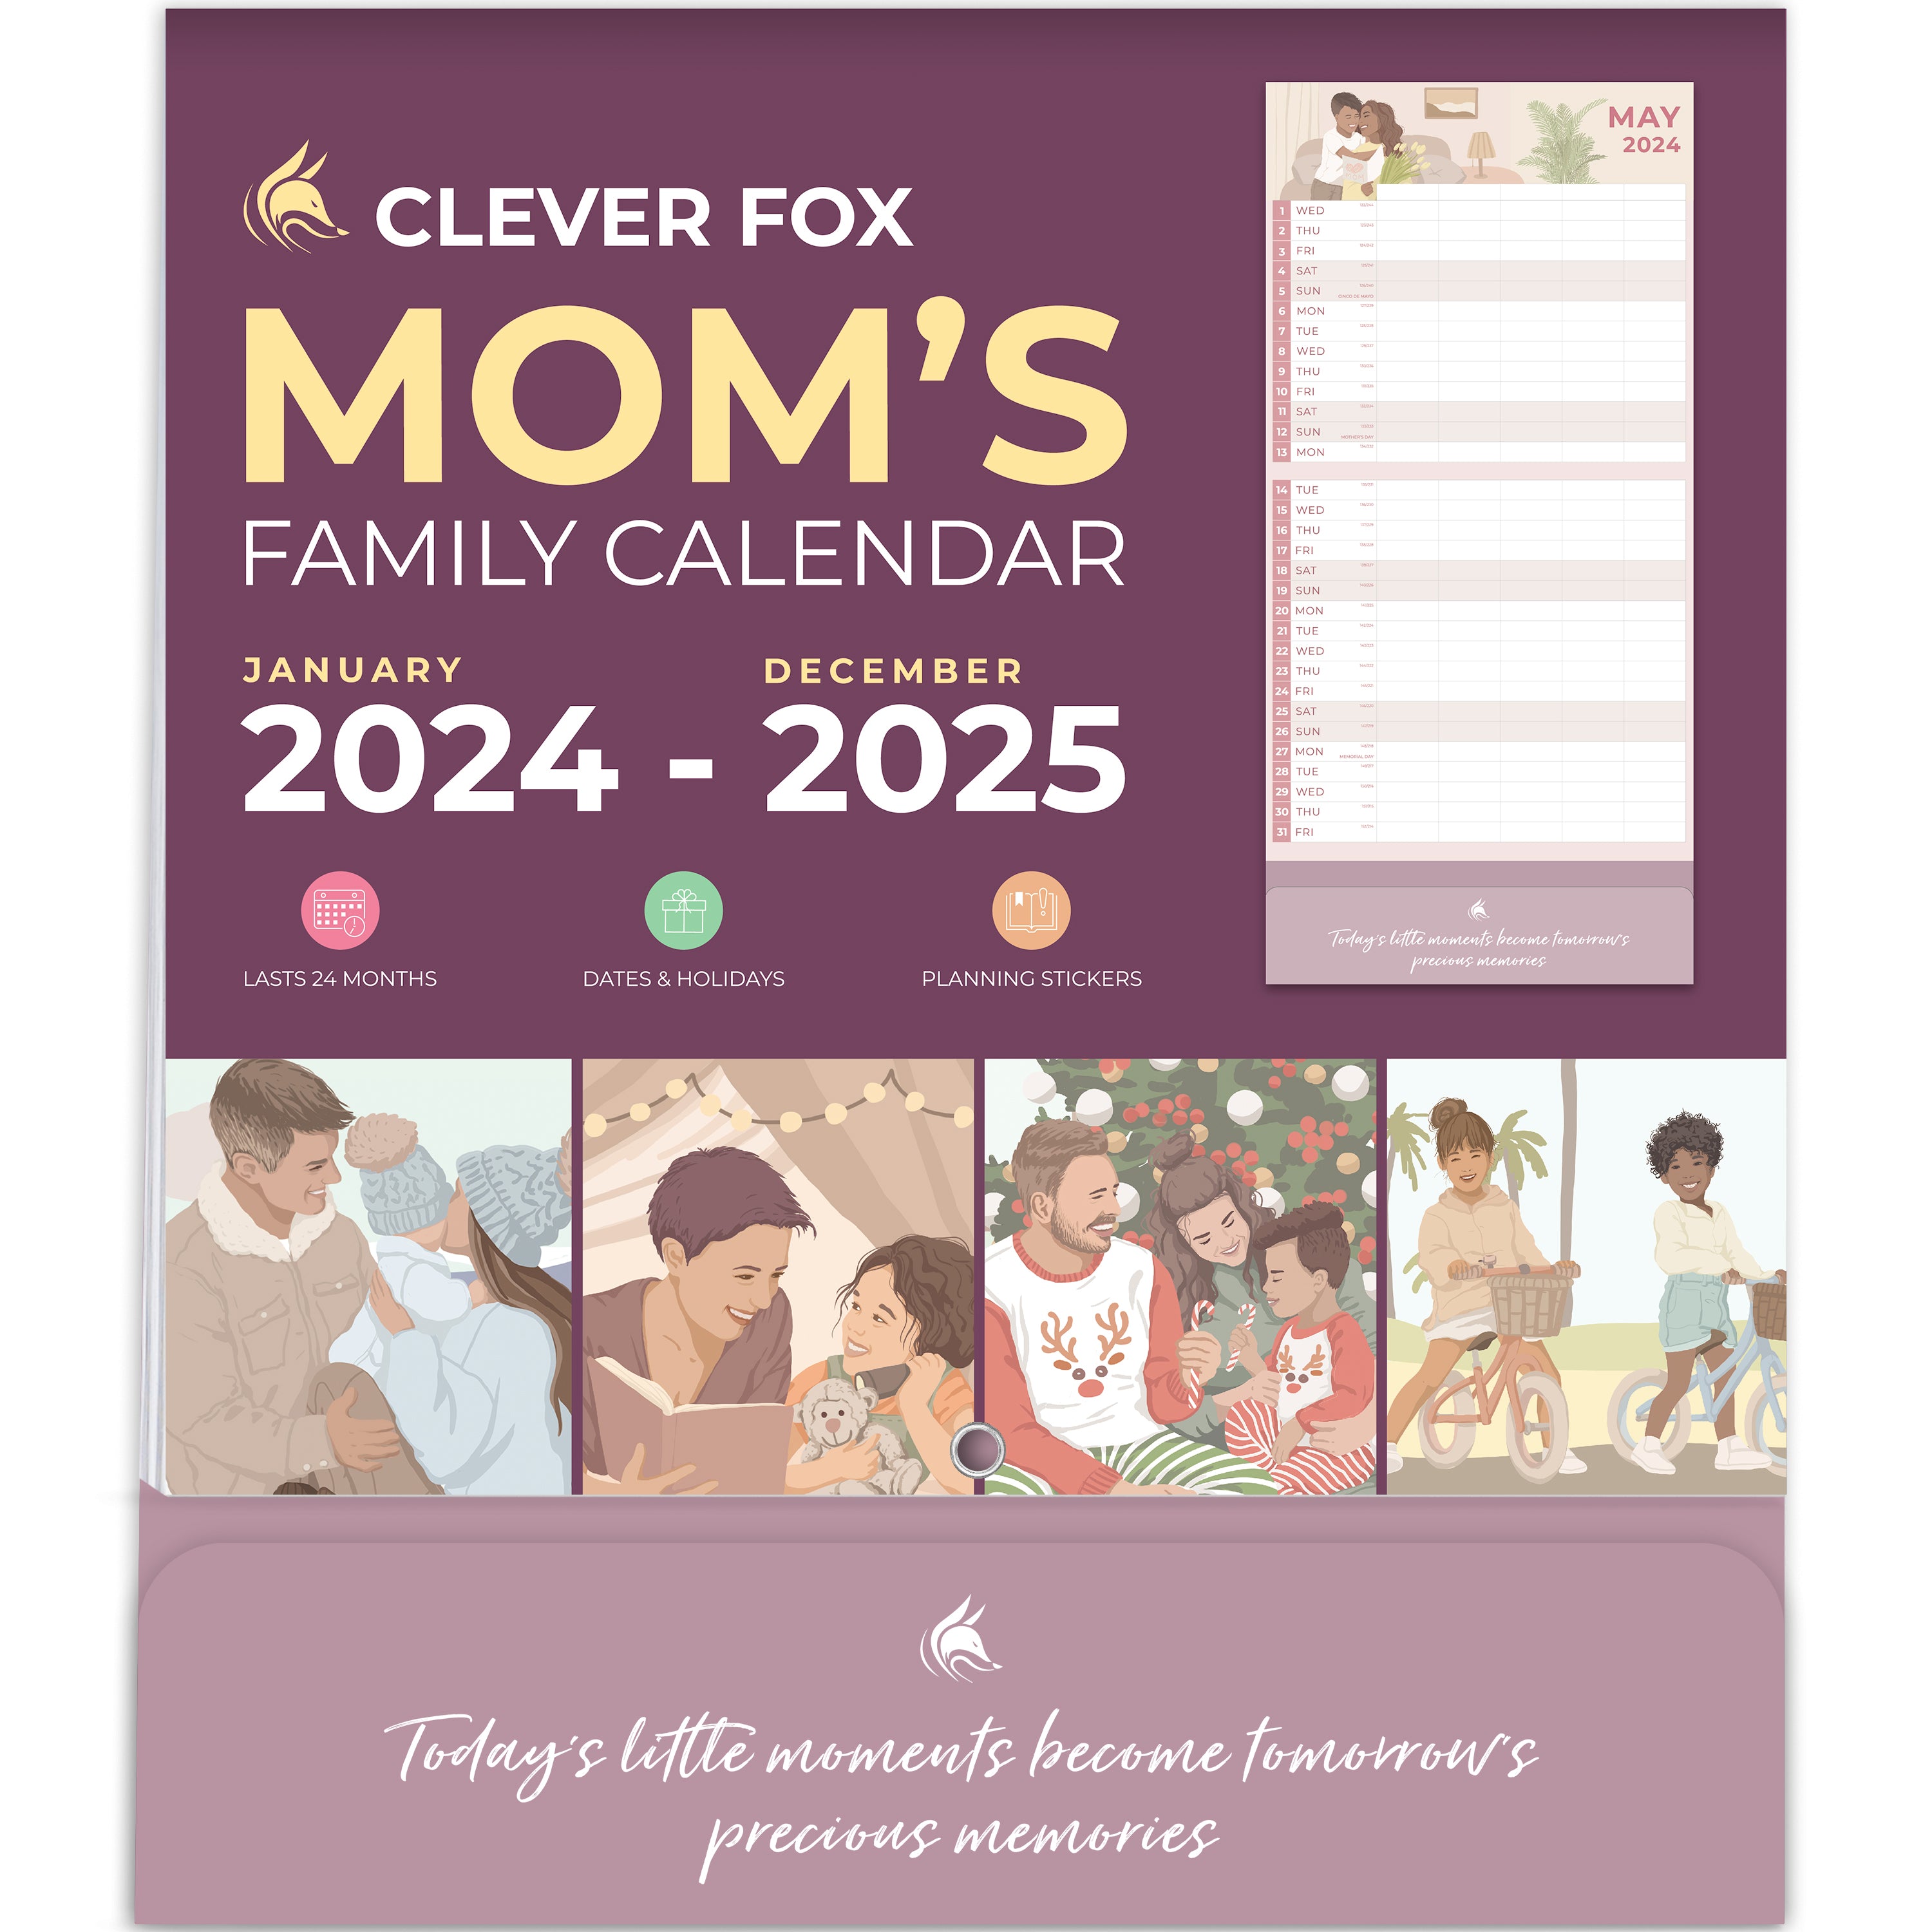 mom-s-family-calendar-2024-2025-clever-fox